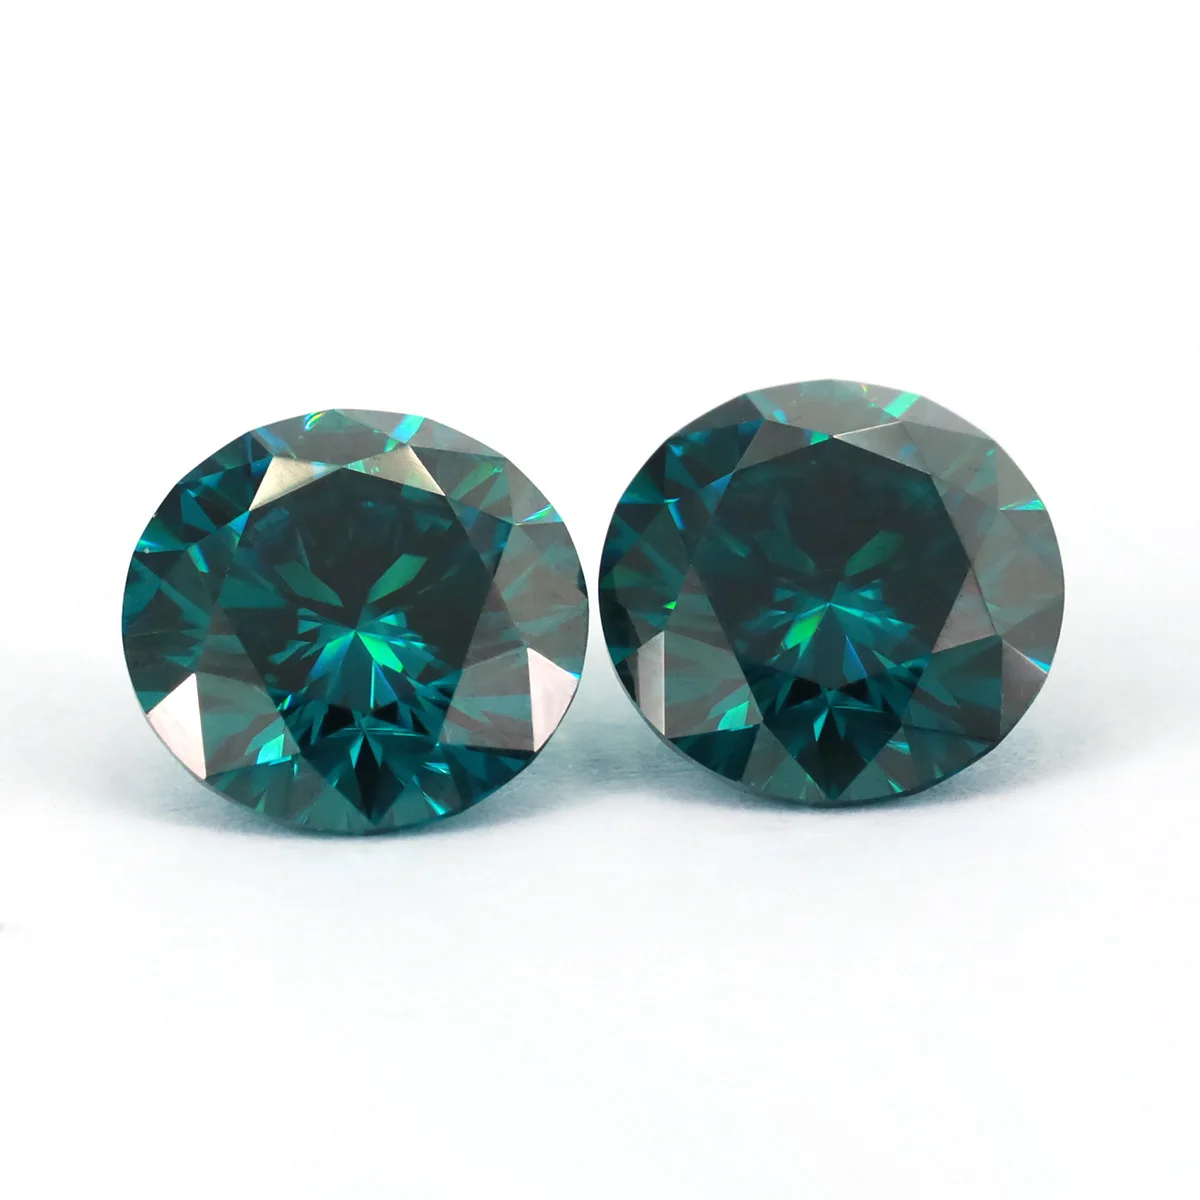 Оригинальный цвет Изумрудно-зеленый камень муассанит бриллиант D-цвета отличной огранки, чистый цвет, высочайшее качество для ювелирных изделий из ожерелья своими руками